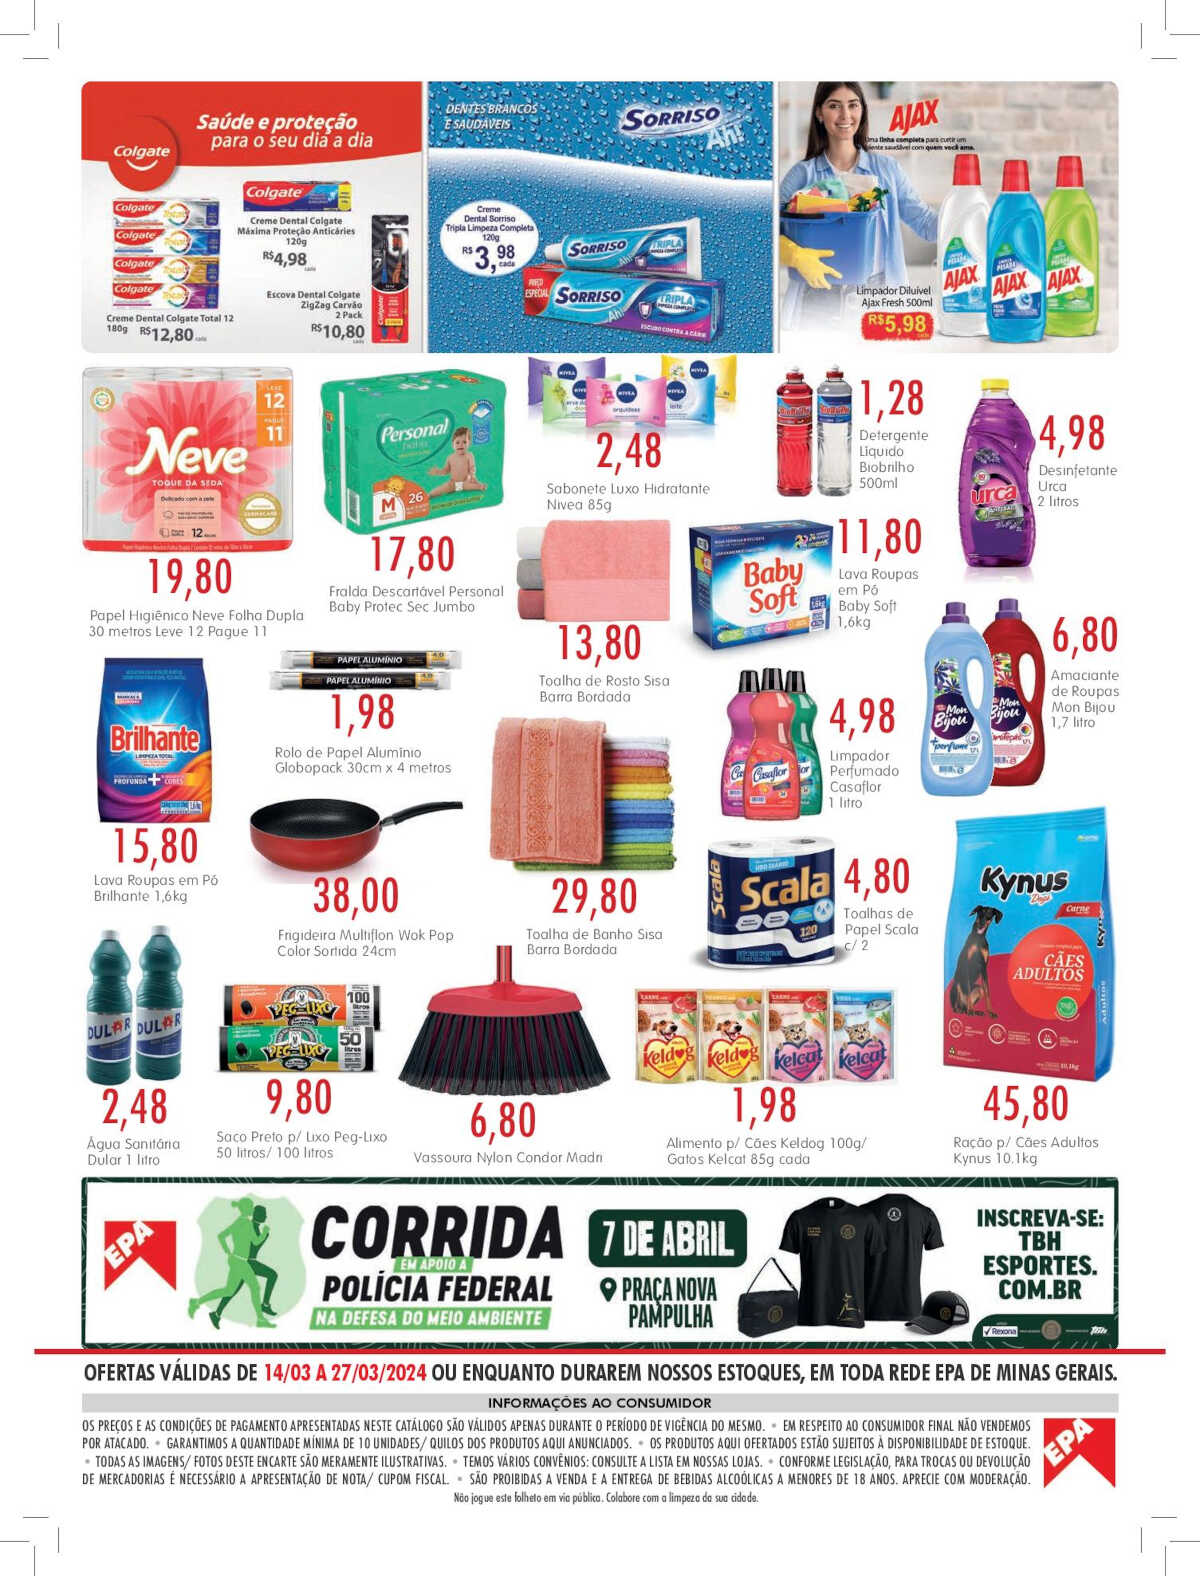 Ofertas Epa Supermercados até 27/03